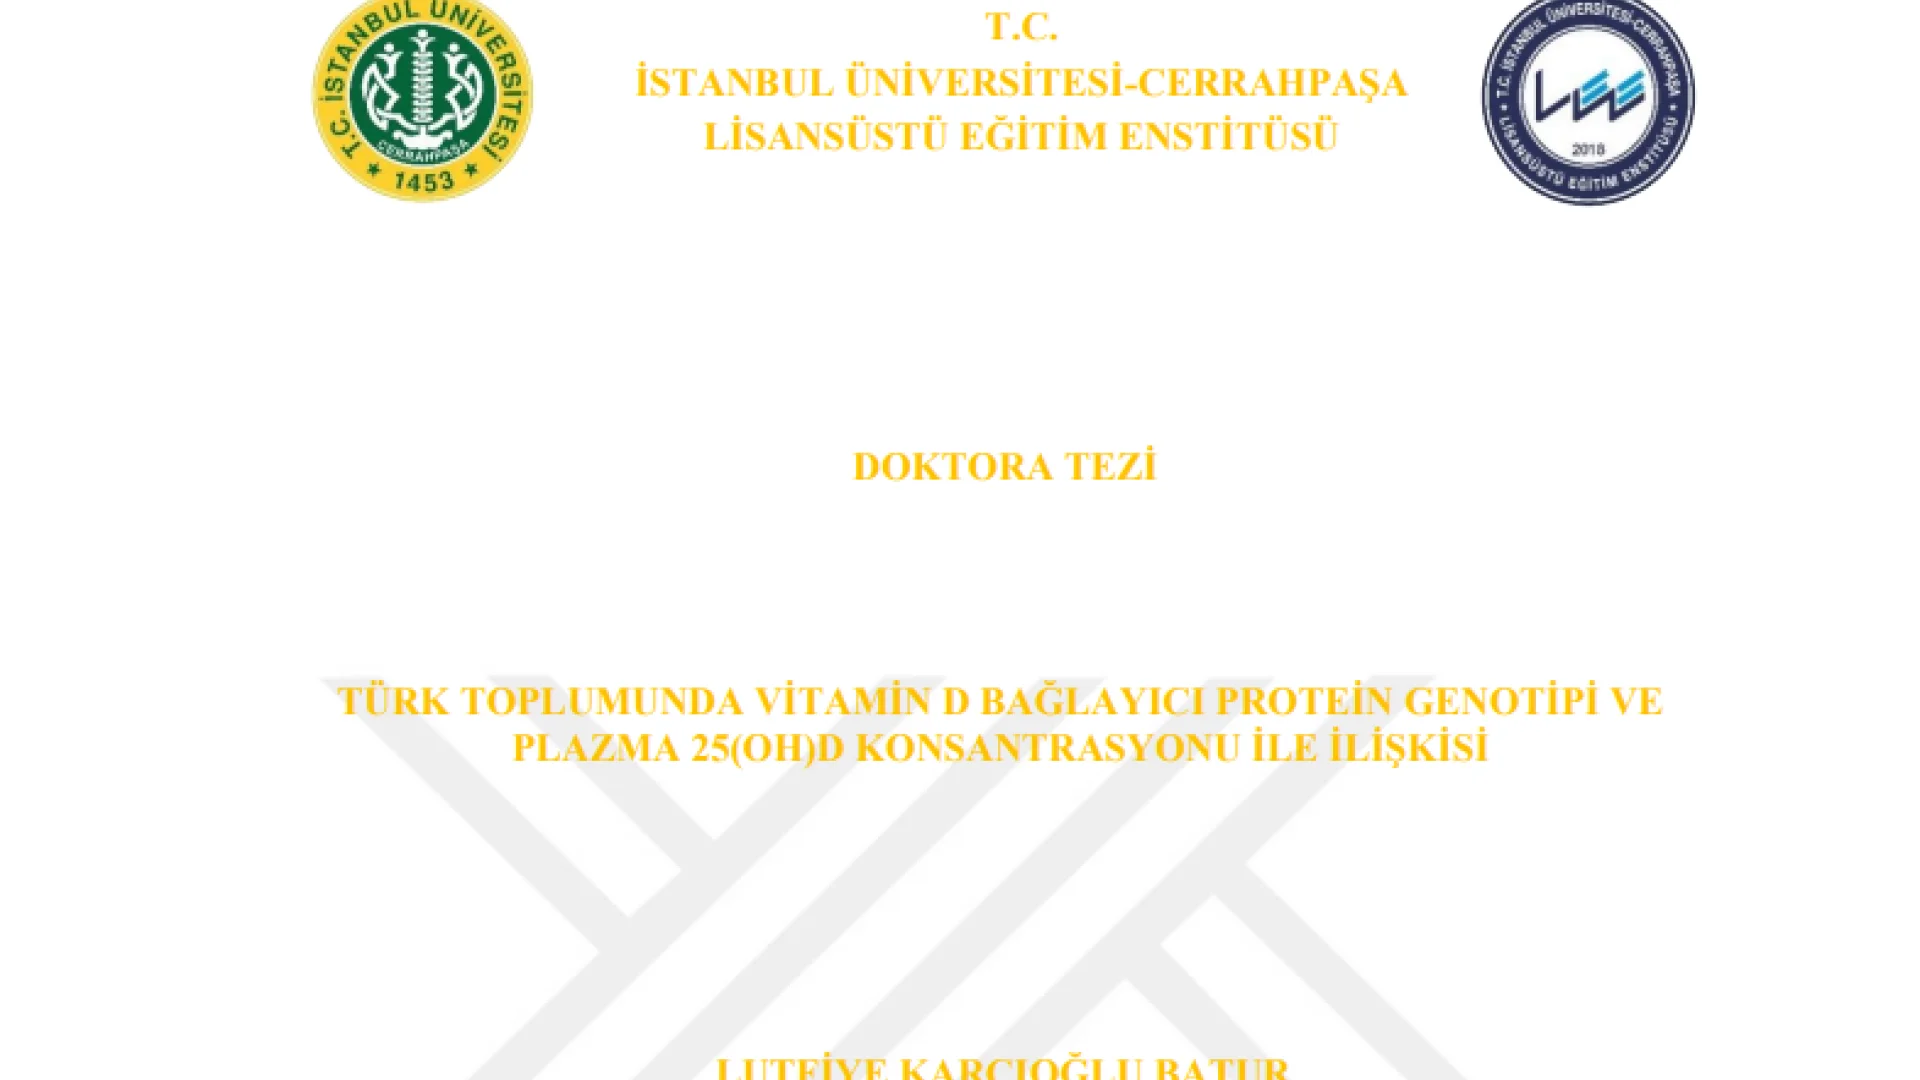 Türk toplumunda vitamin D bağlayıcı protein genotipi ve plazma 25(OH)D konsantrasyonu ile ilişkisi